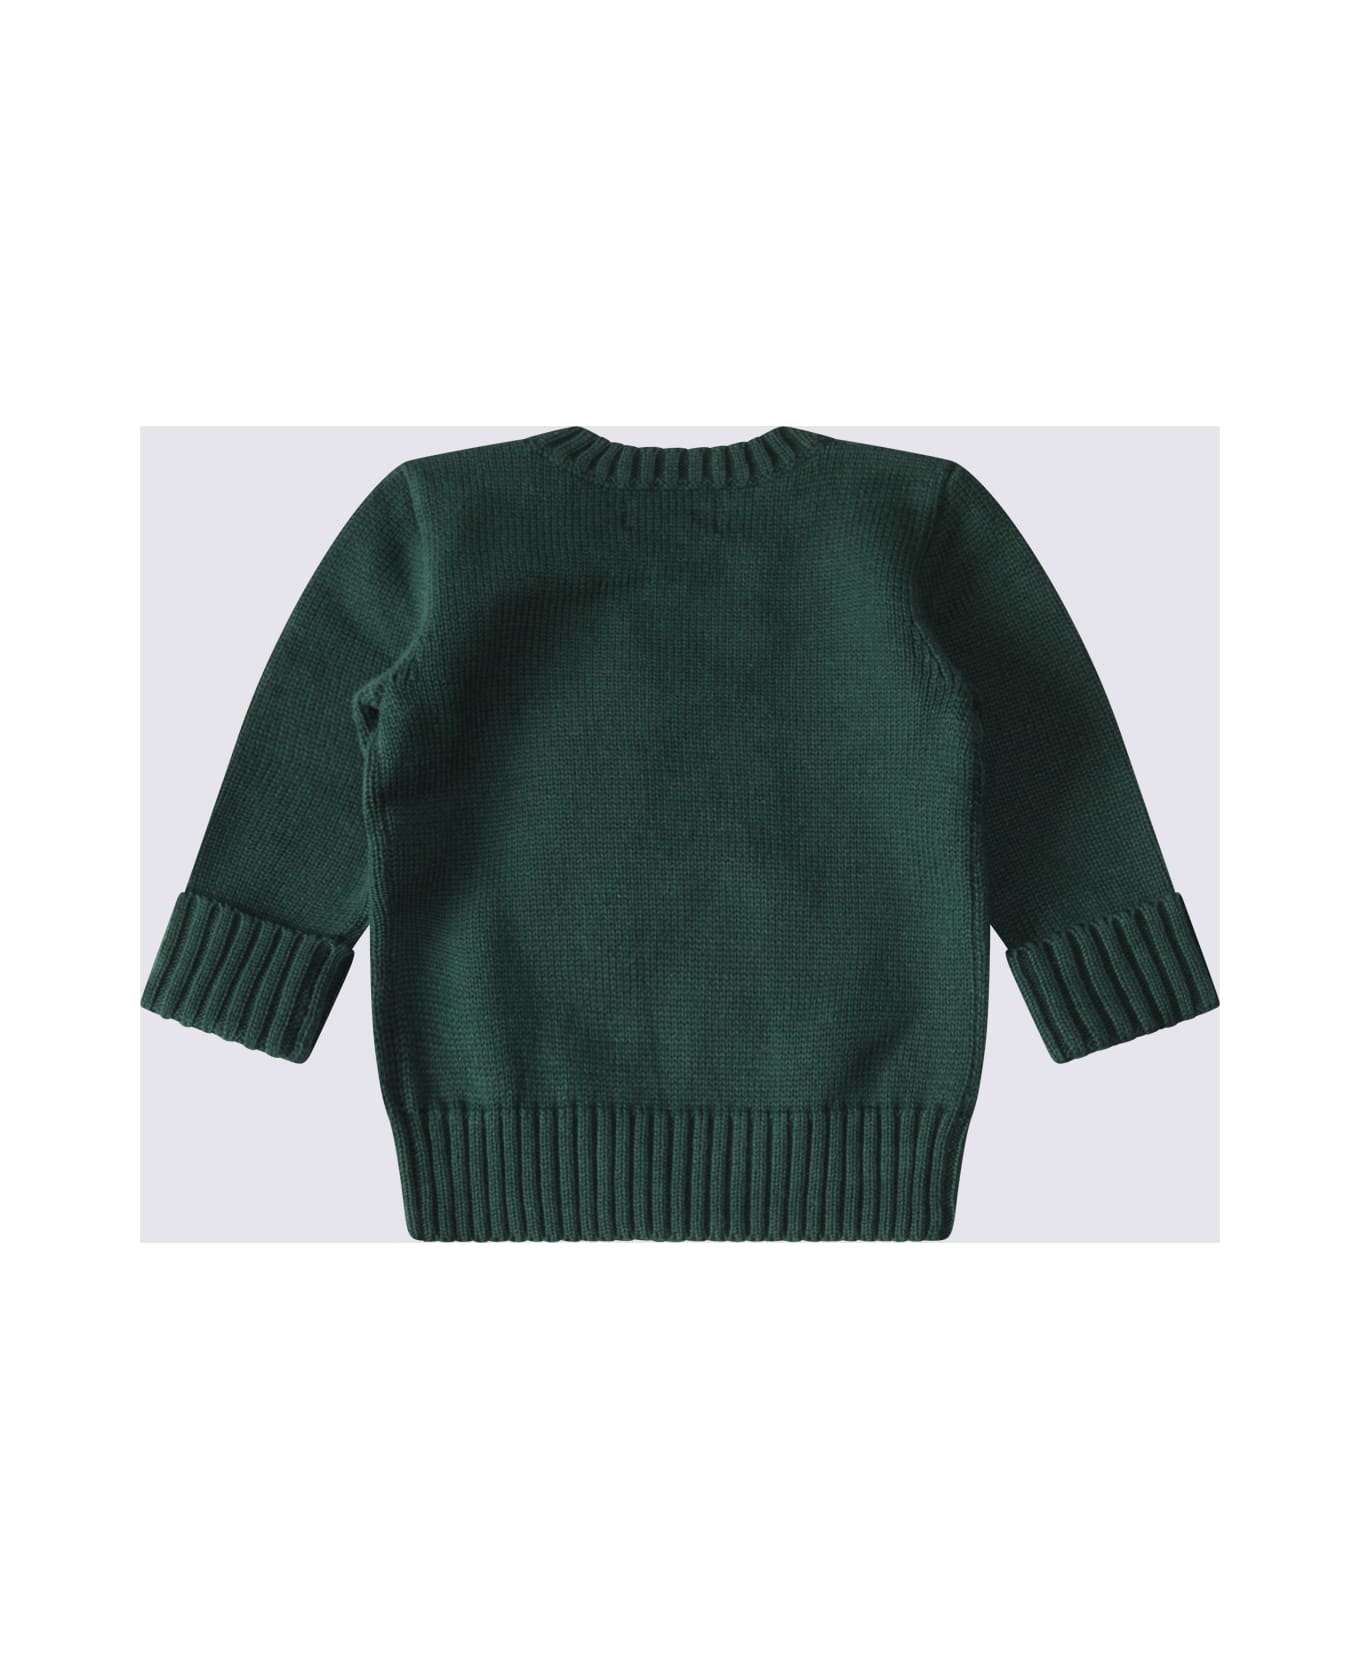 Polo Ralph Lauren Green Cotton Sweater - Green